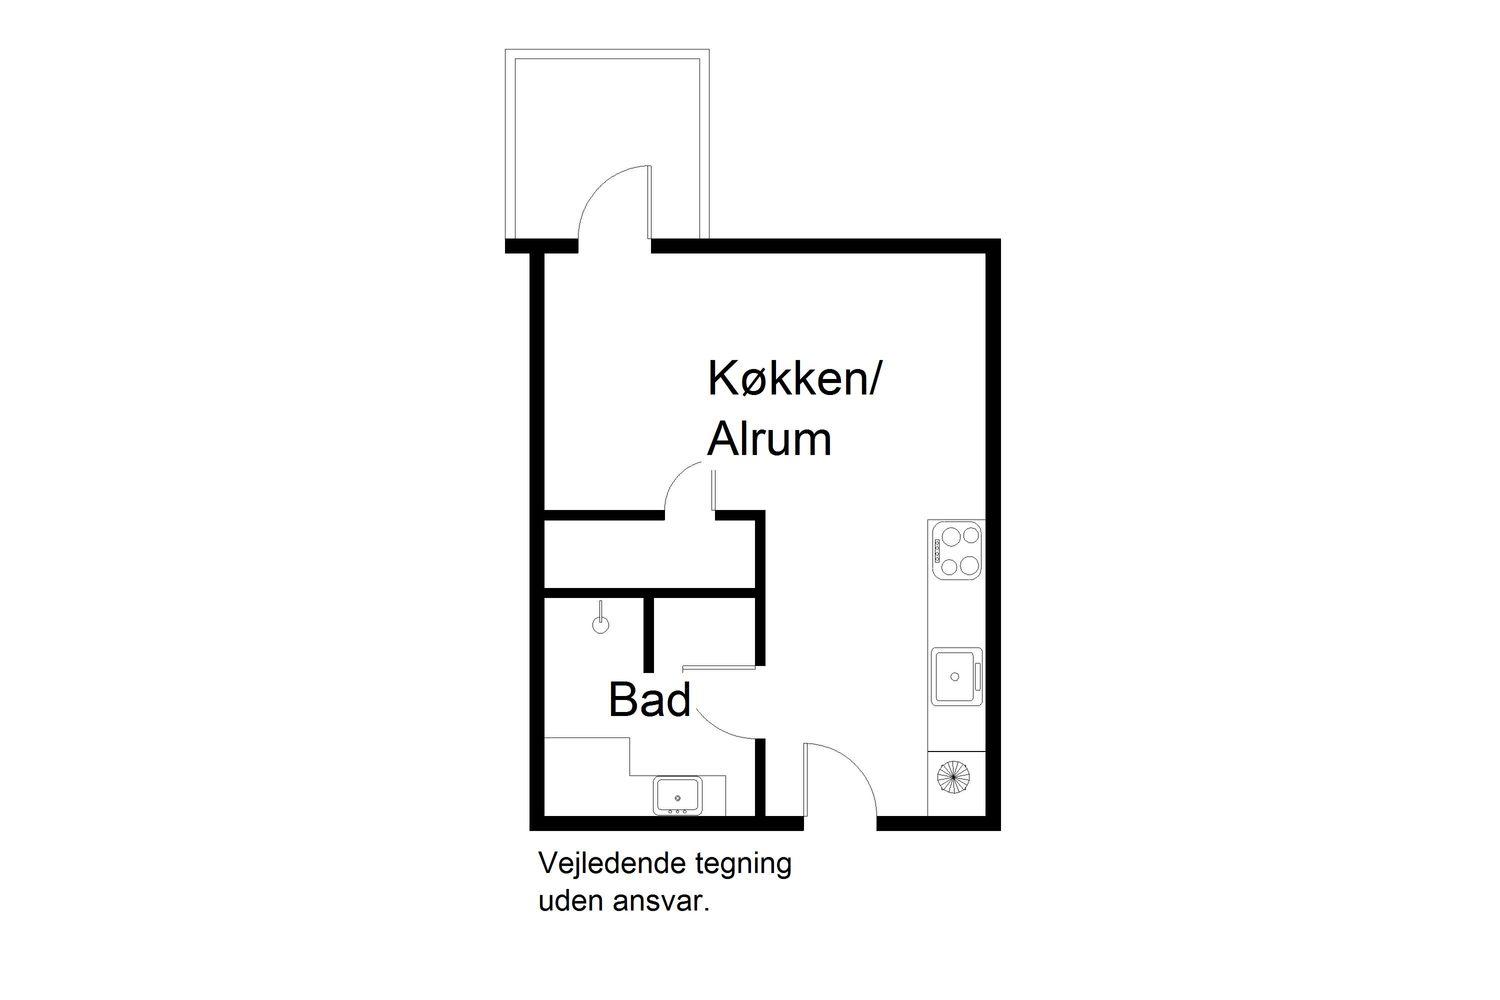 Trøjborgvej 72E, 5. 2. floor plan 0